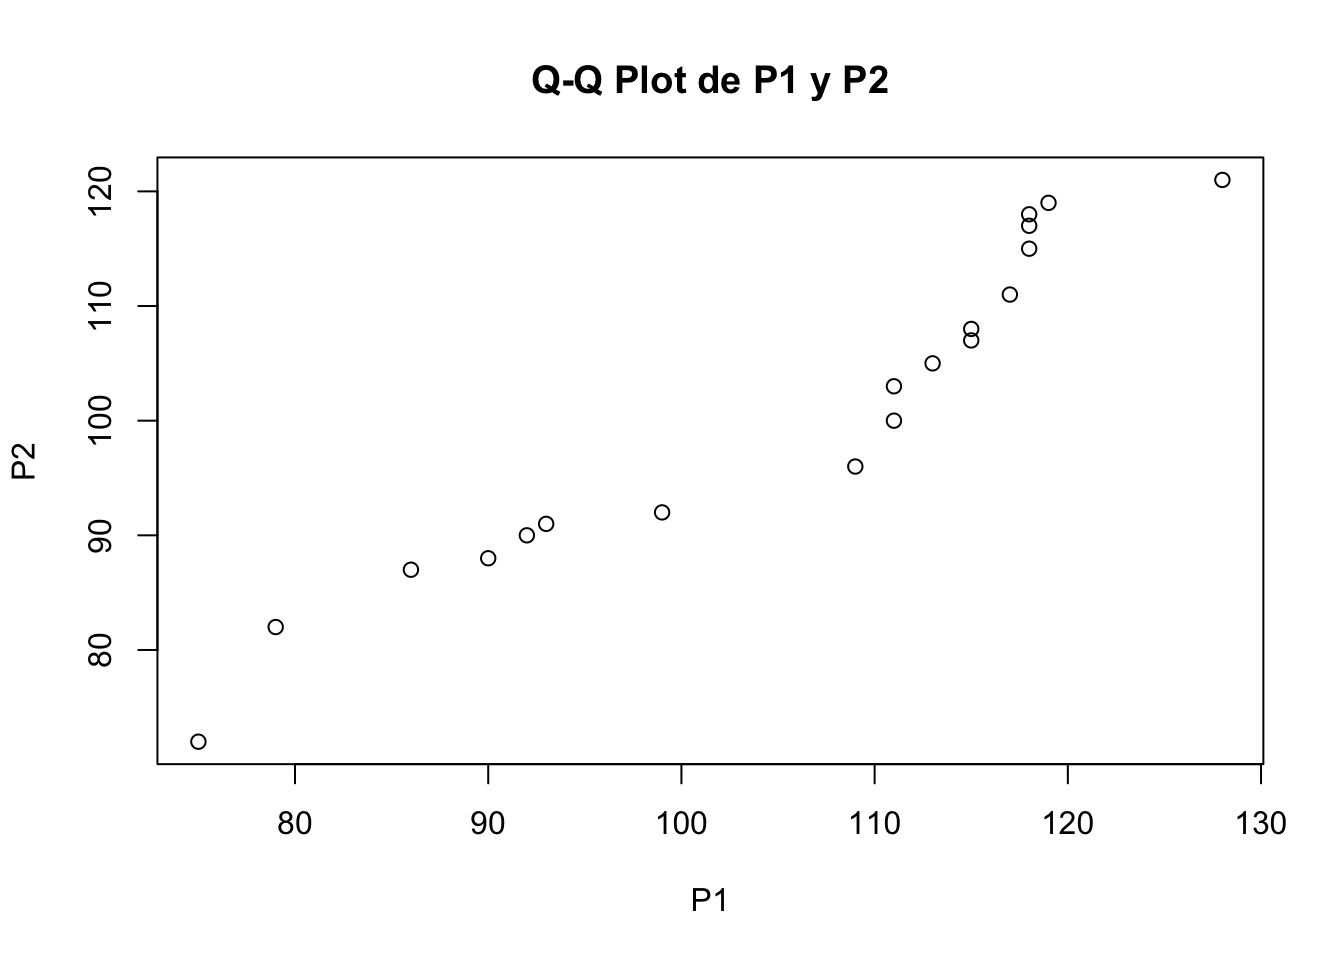 Q-Q plot para los vectores P1 y P2.